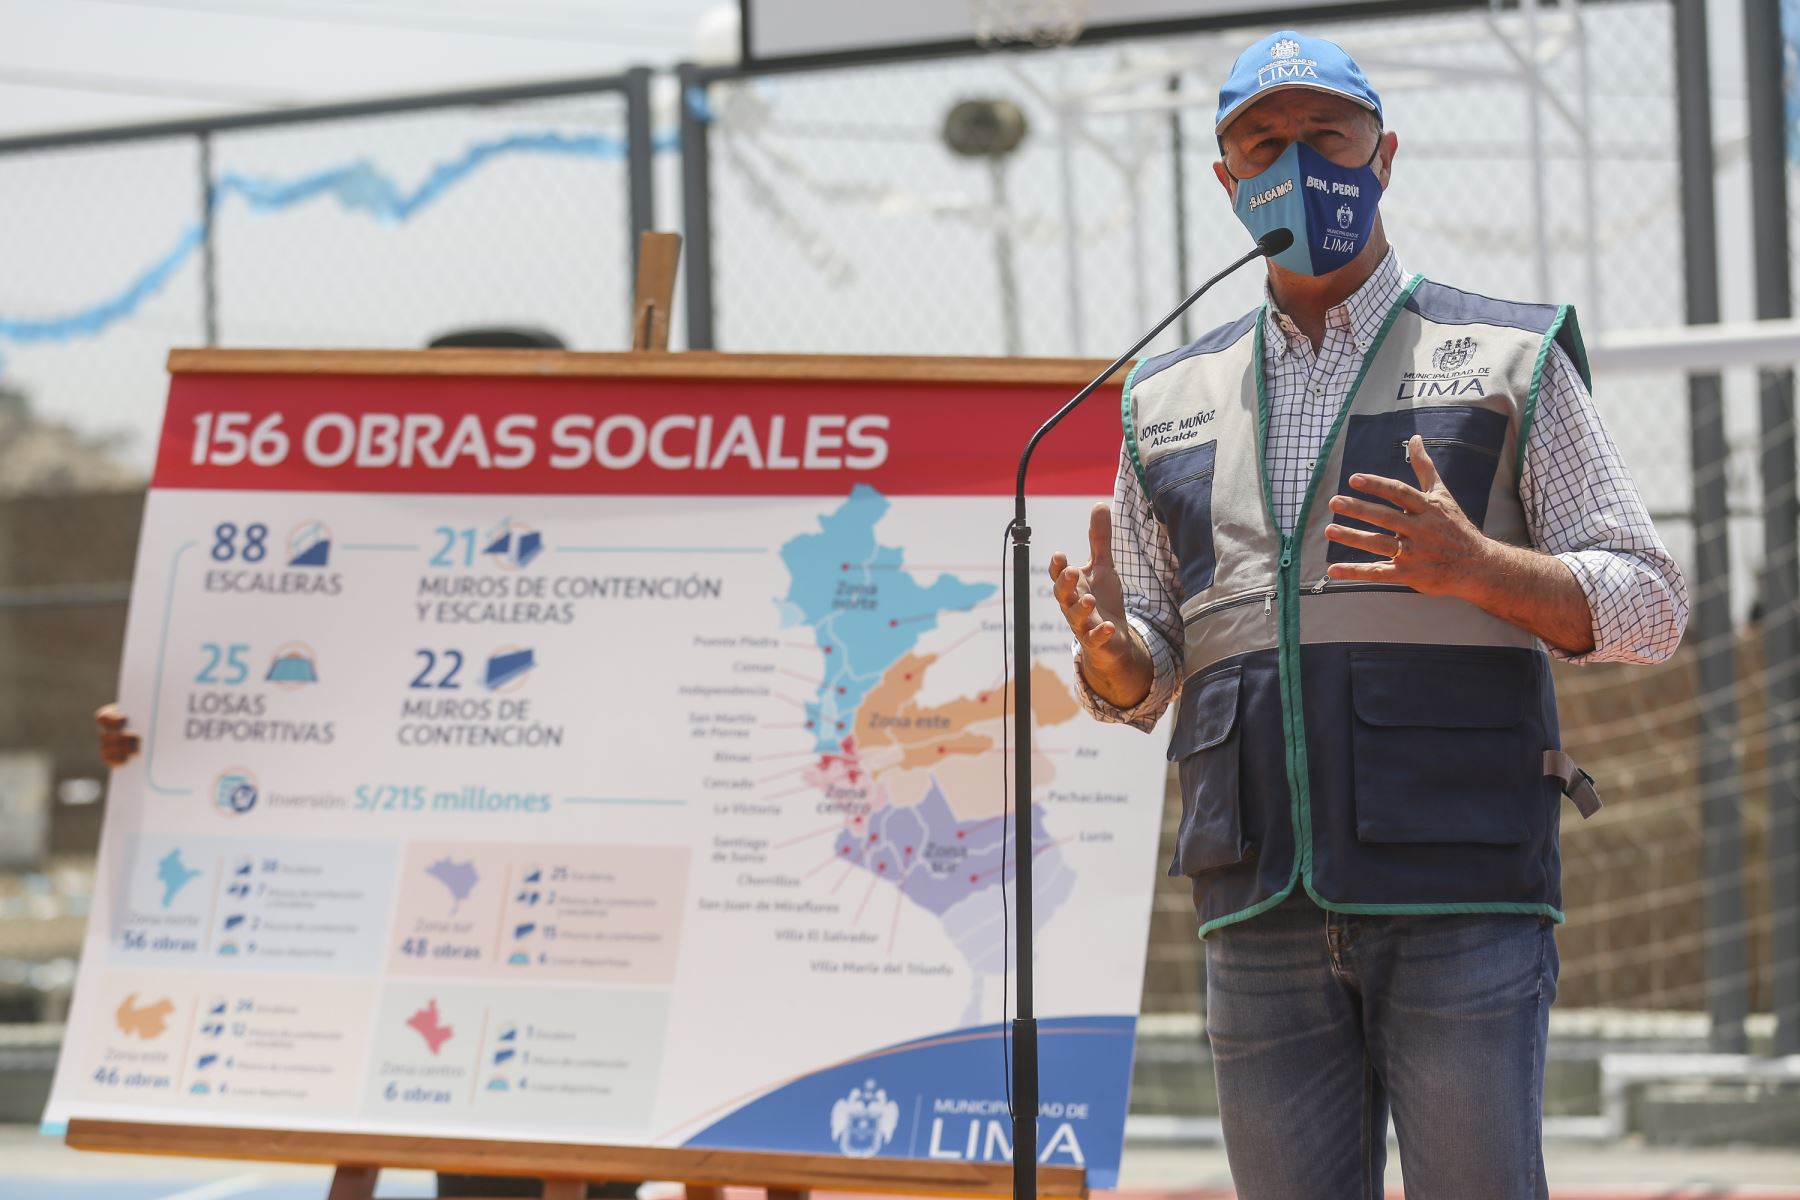 El alcalde de Lima, Jorge Muñoz, presentó el plan de las 156 obras sociales que la comuna limeña viene ejecutando en 19 distritos, las cuales se caracterizan por la intervención de lugares que requerían el mejoramiento y construcción de vías de acceso peatonal y espacios recreativos en zonas alejadas de la capital. Foto: MML